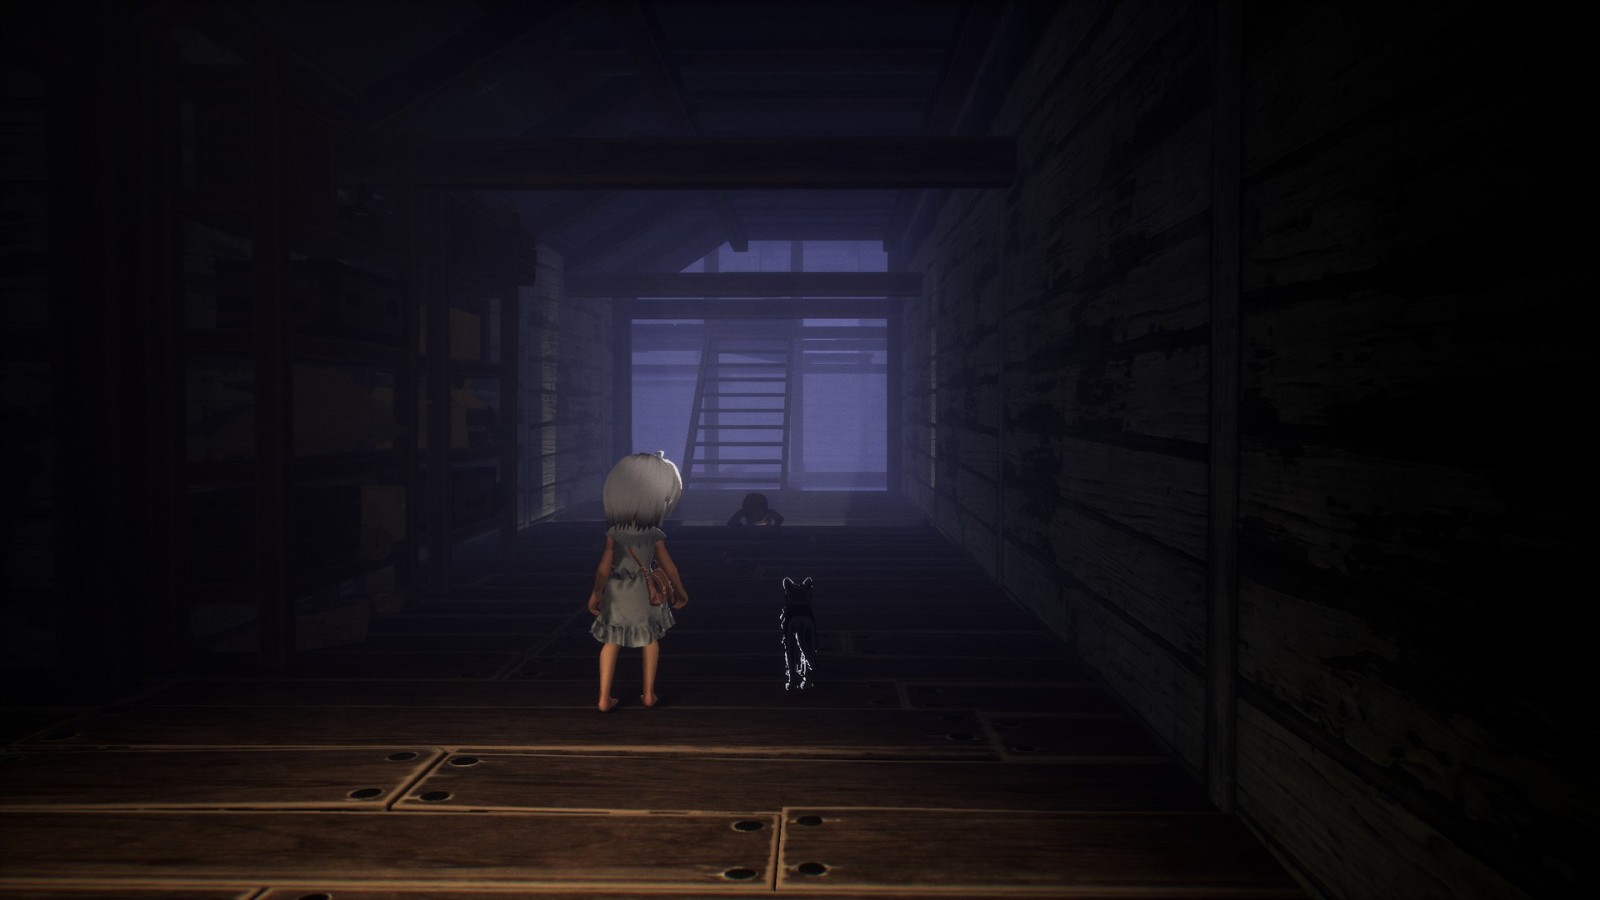 冒险解谜游戏《LIGHT：Black Cat & Amnesia Girl》Steam抢先体验 售价63元